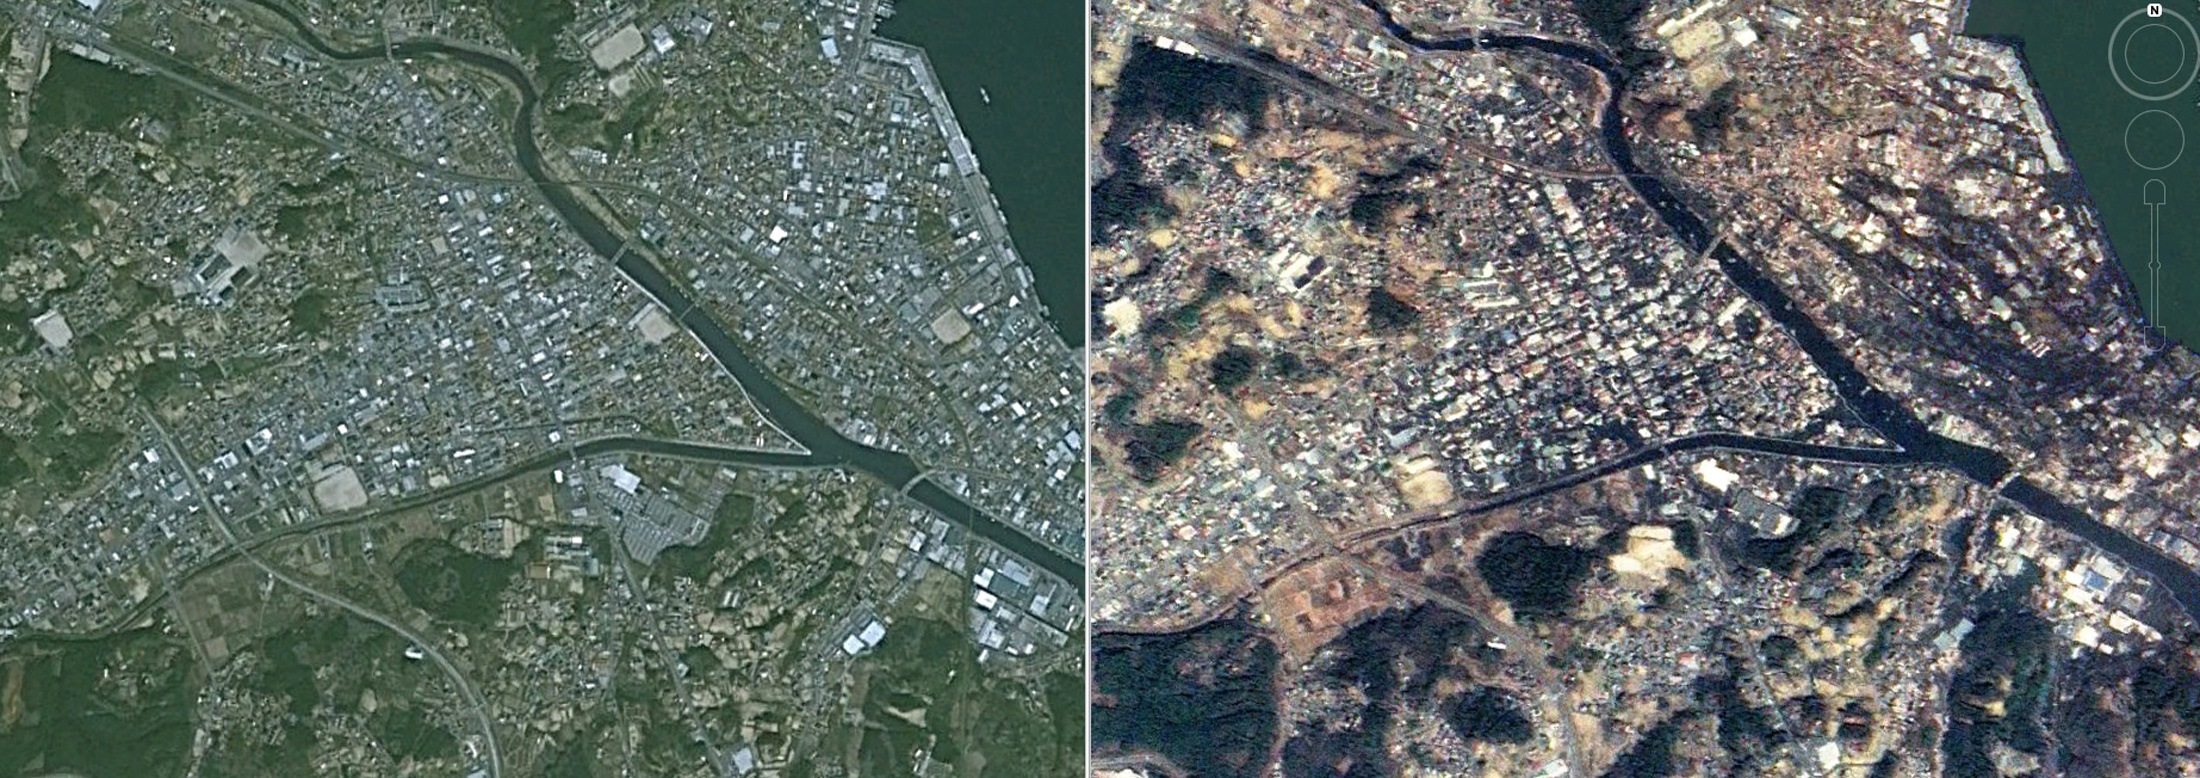 'Αλλη μια πόλη - φάντασμα η Κεσενούμα - πριν και μετά